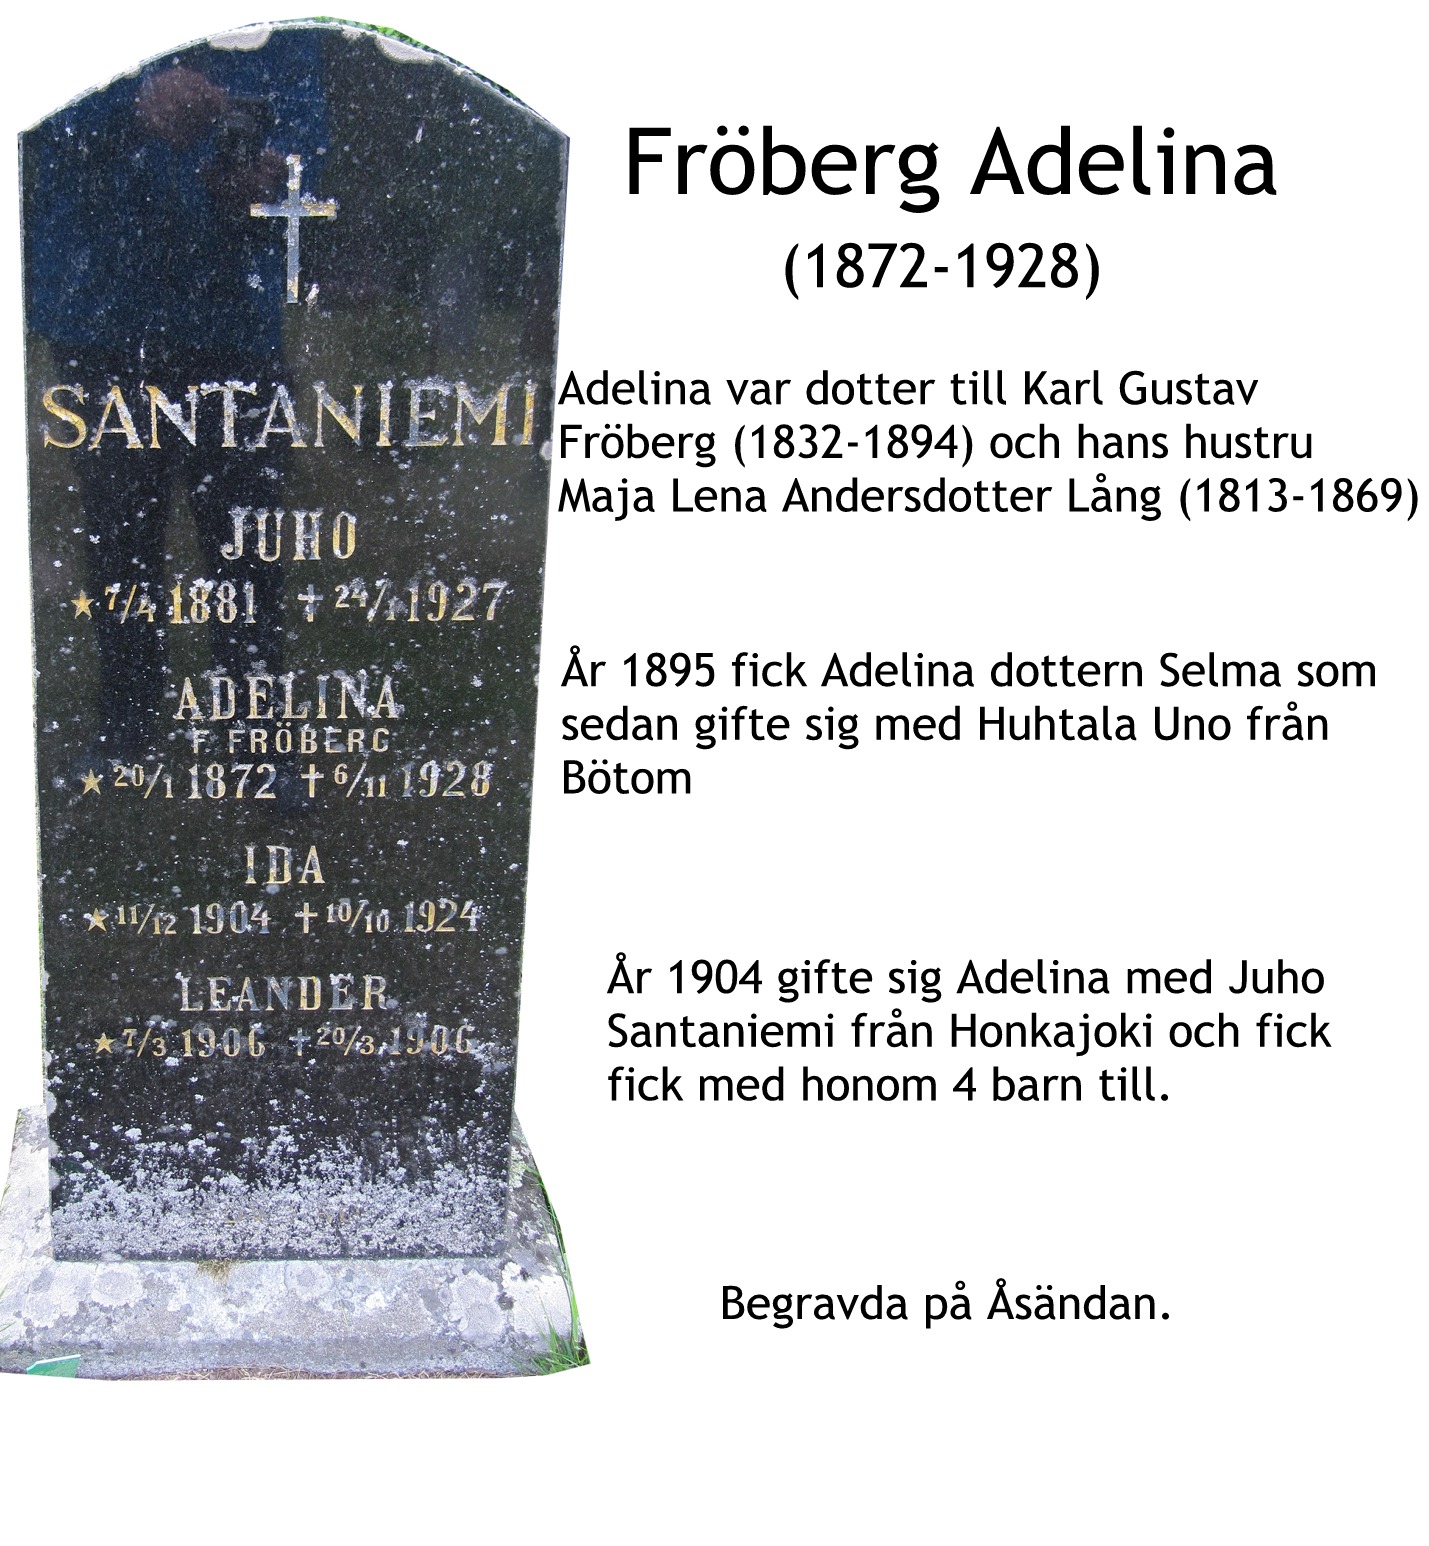 Fröberg Adelina